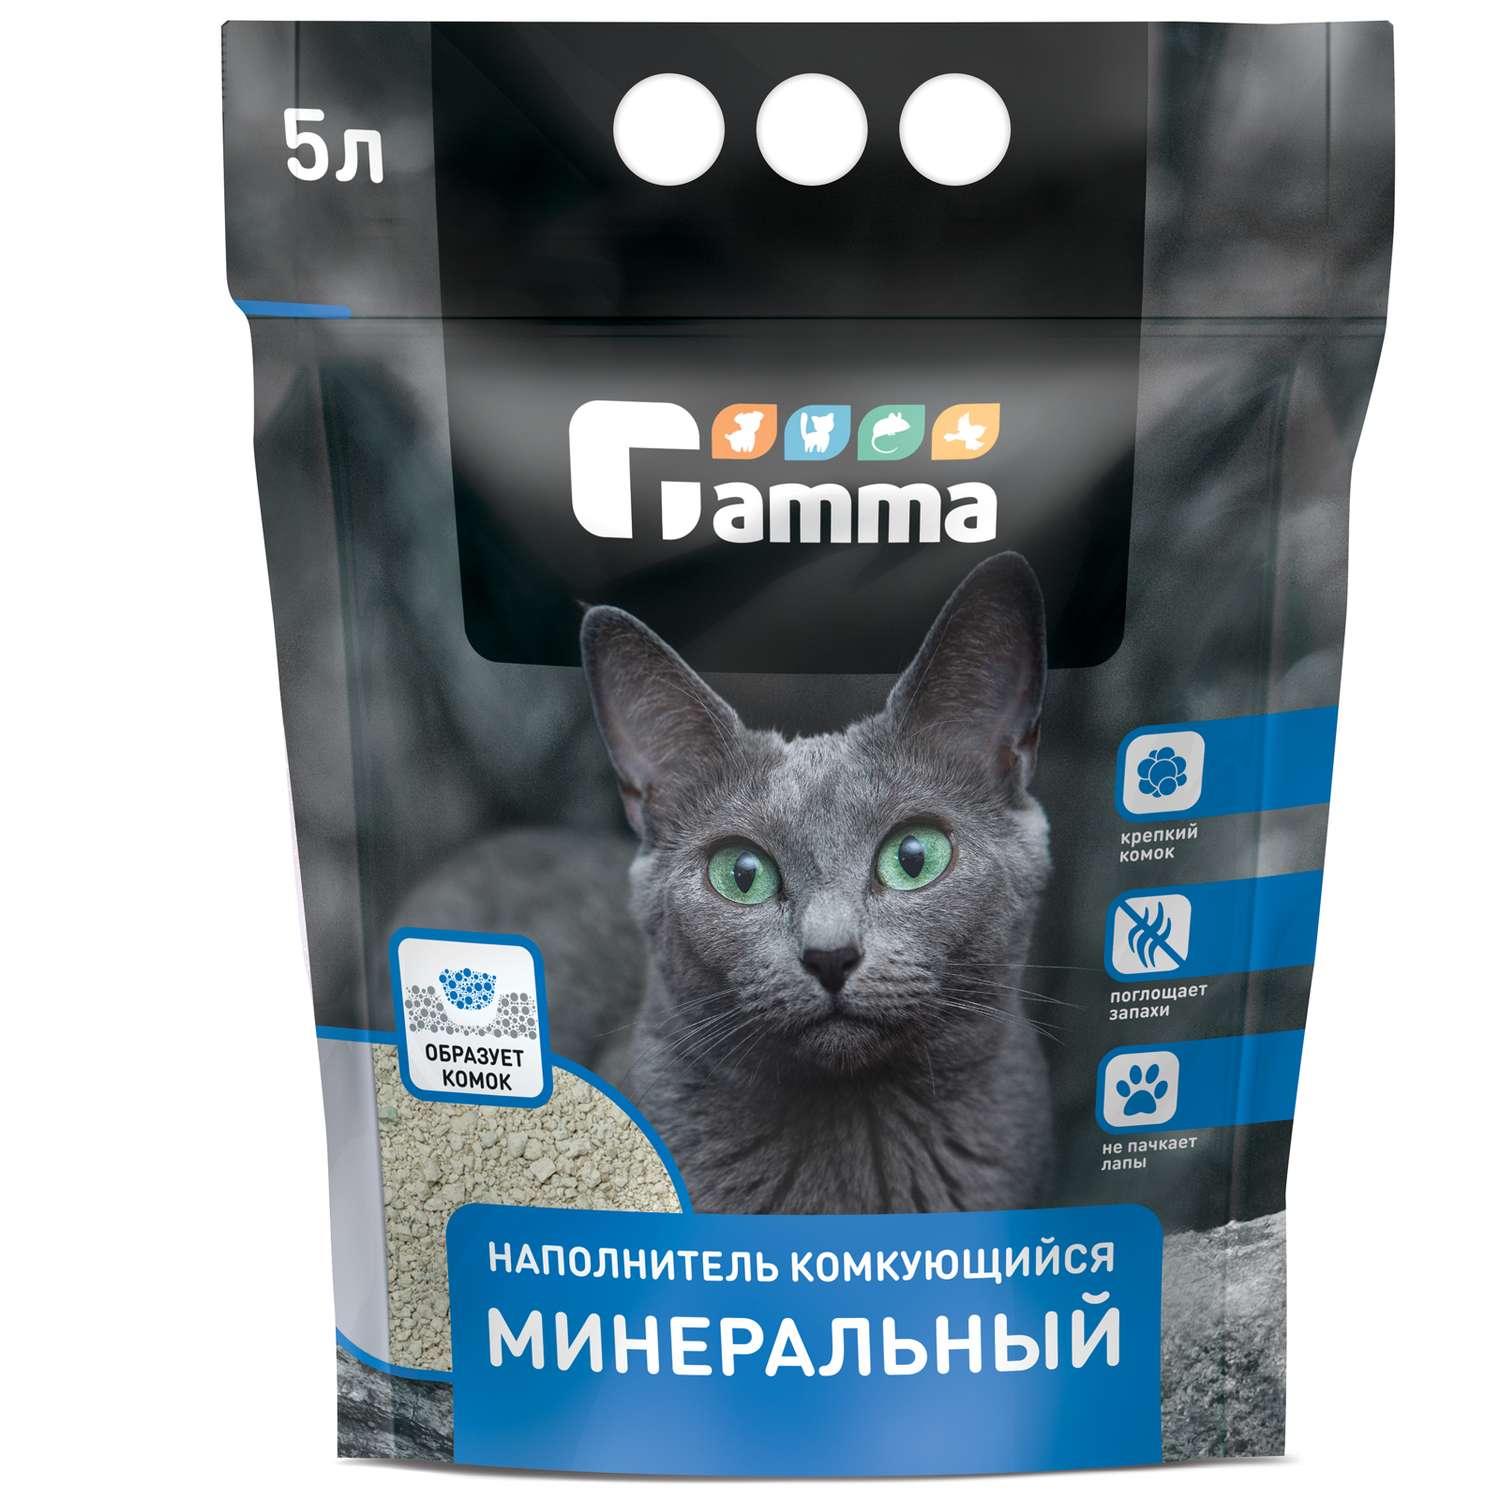 Наполнитель для кошек GAMMA минеральный комкующийся 5л - фото 1